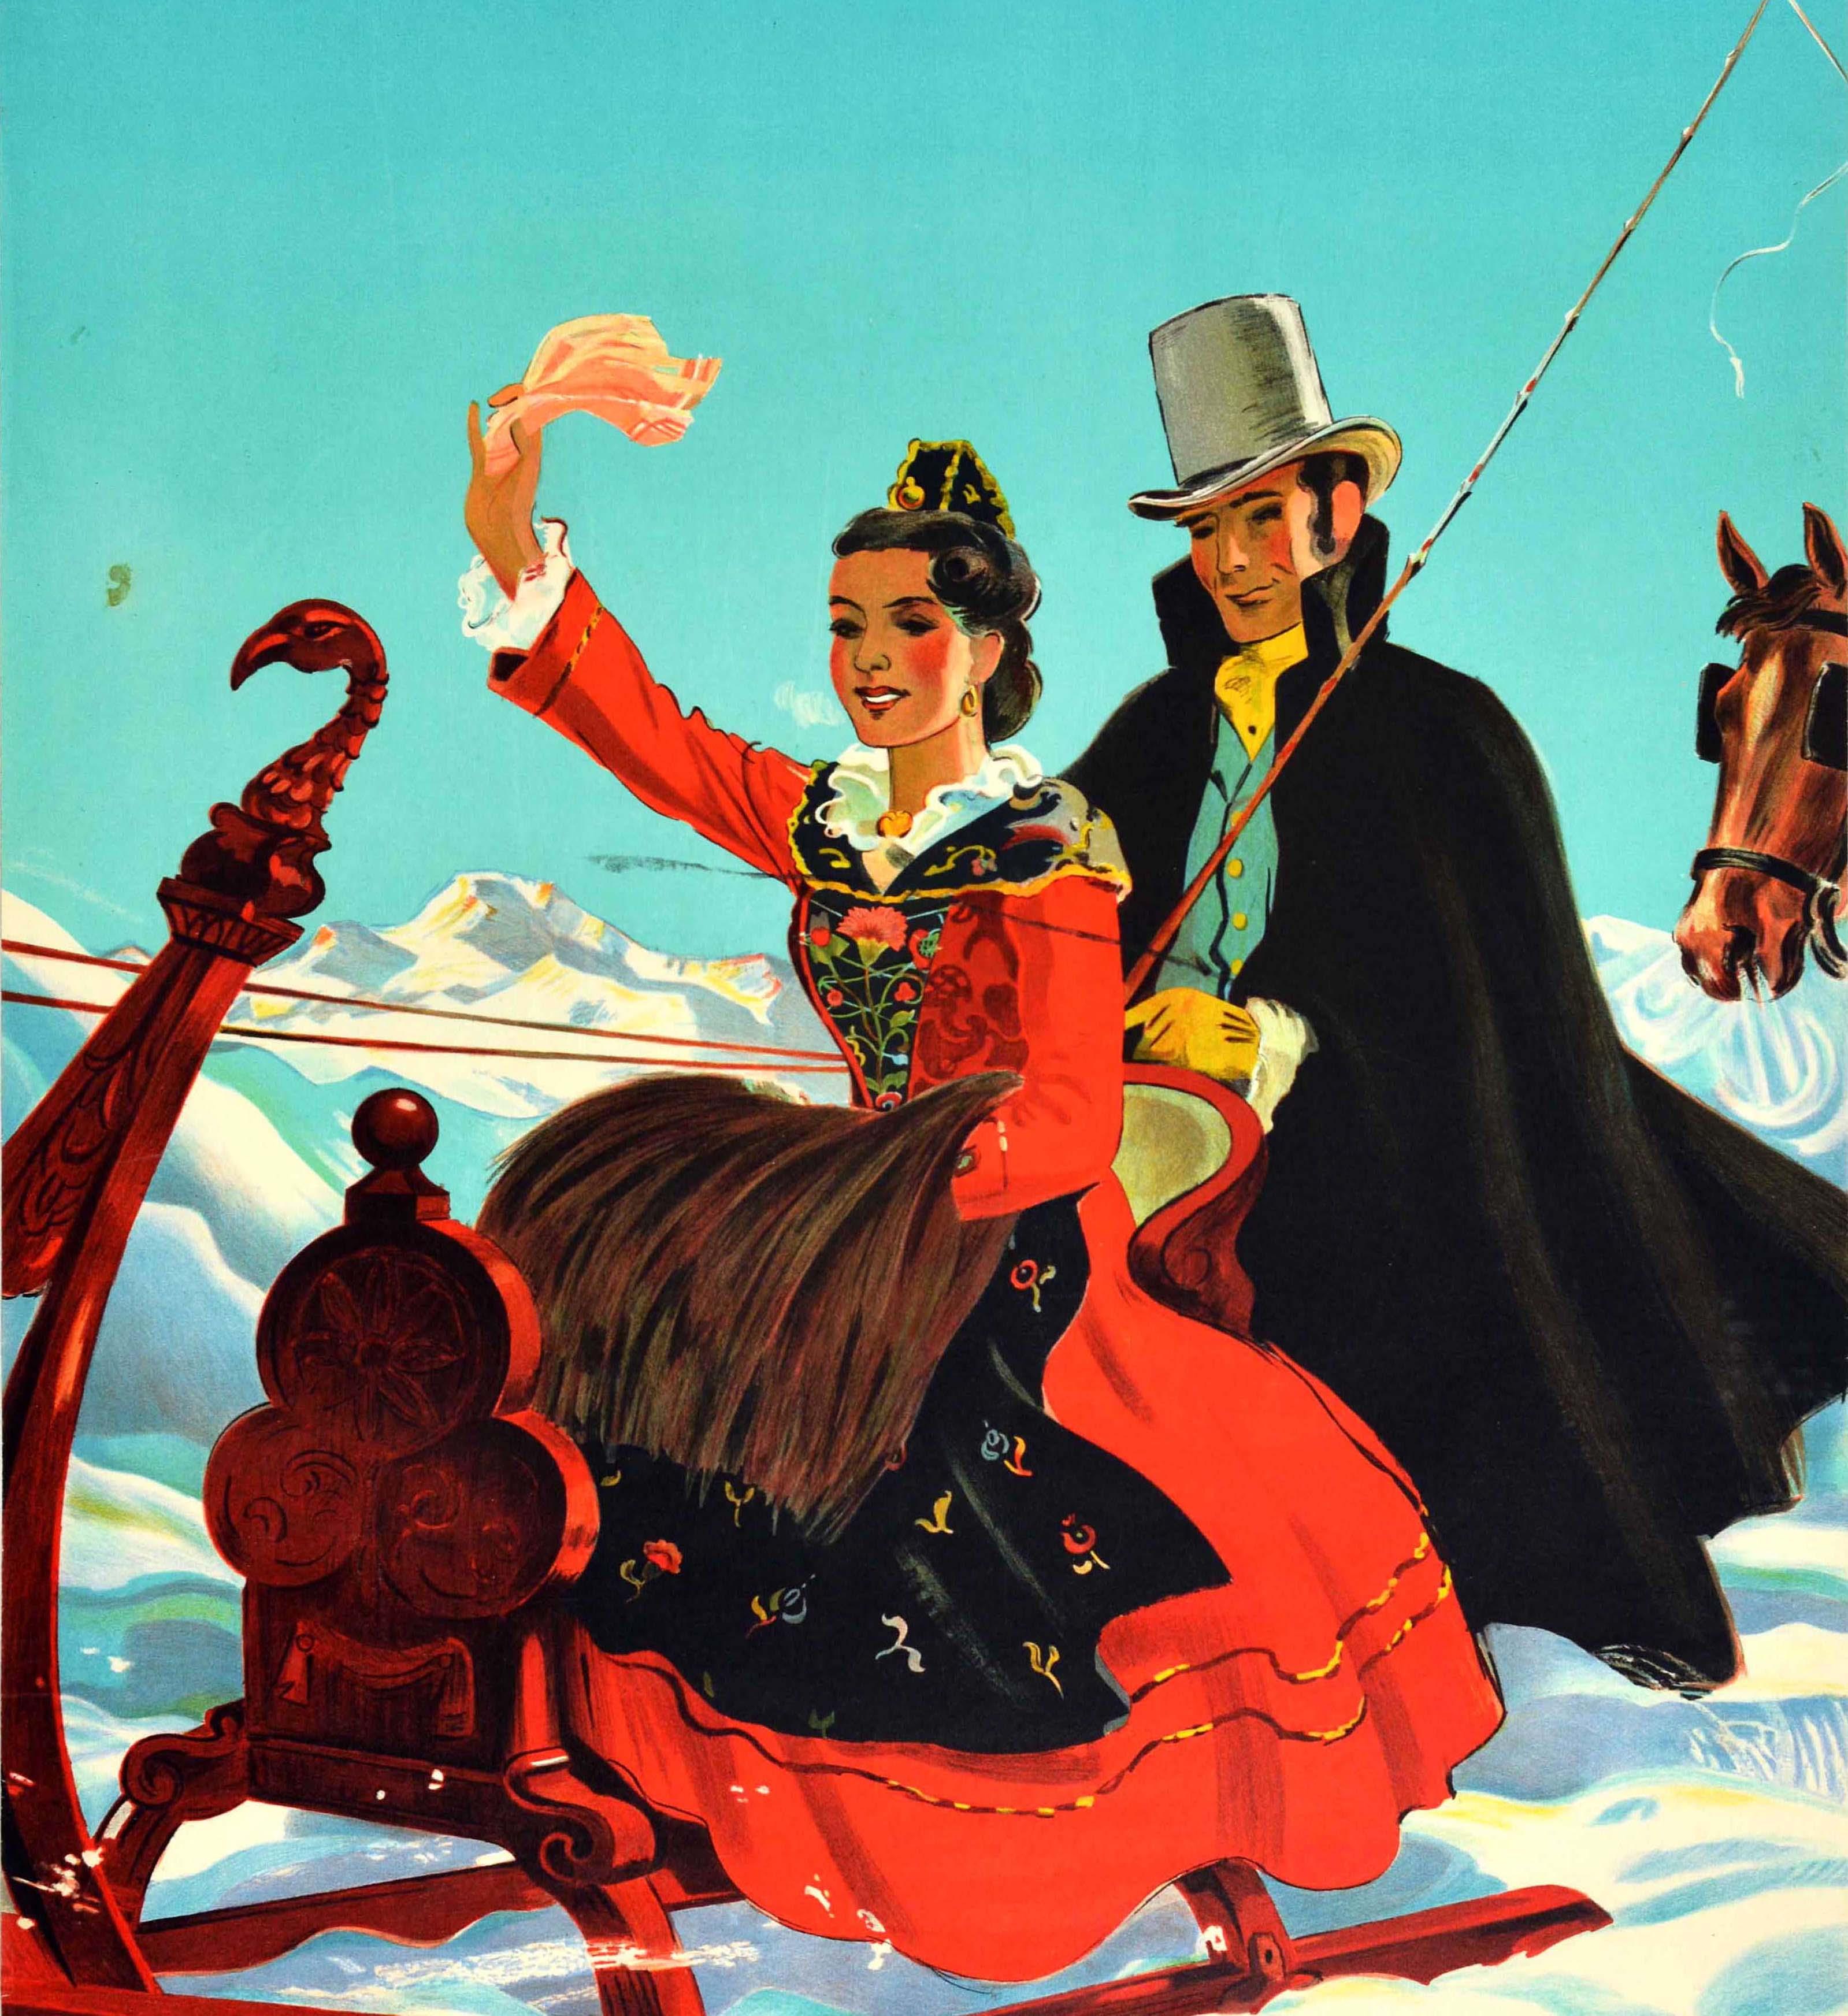 Original Vintage Travel Poster St Moritz Switzerland Horse Drawn Sleigh Laubi - Print by Hugo Laubi